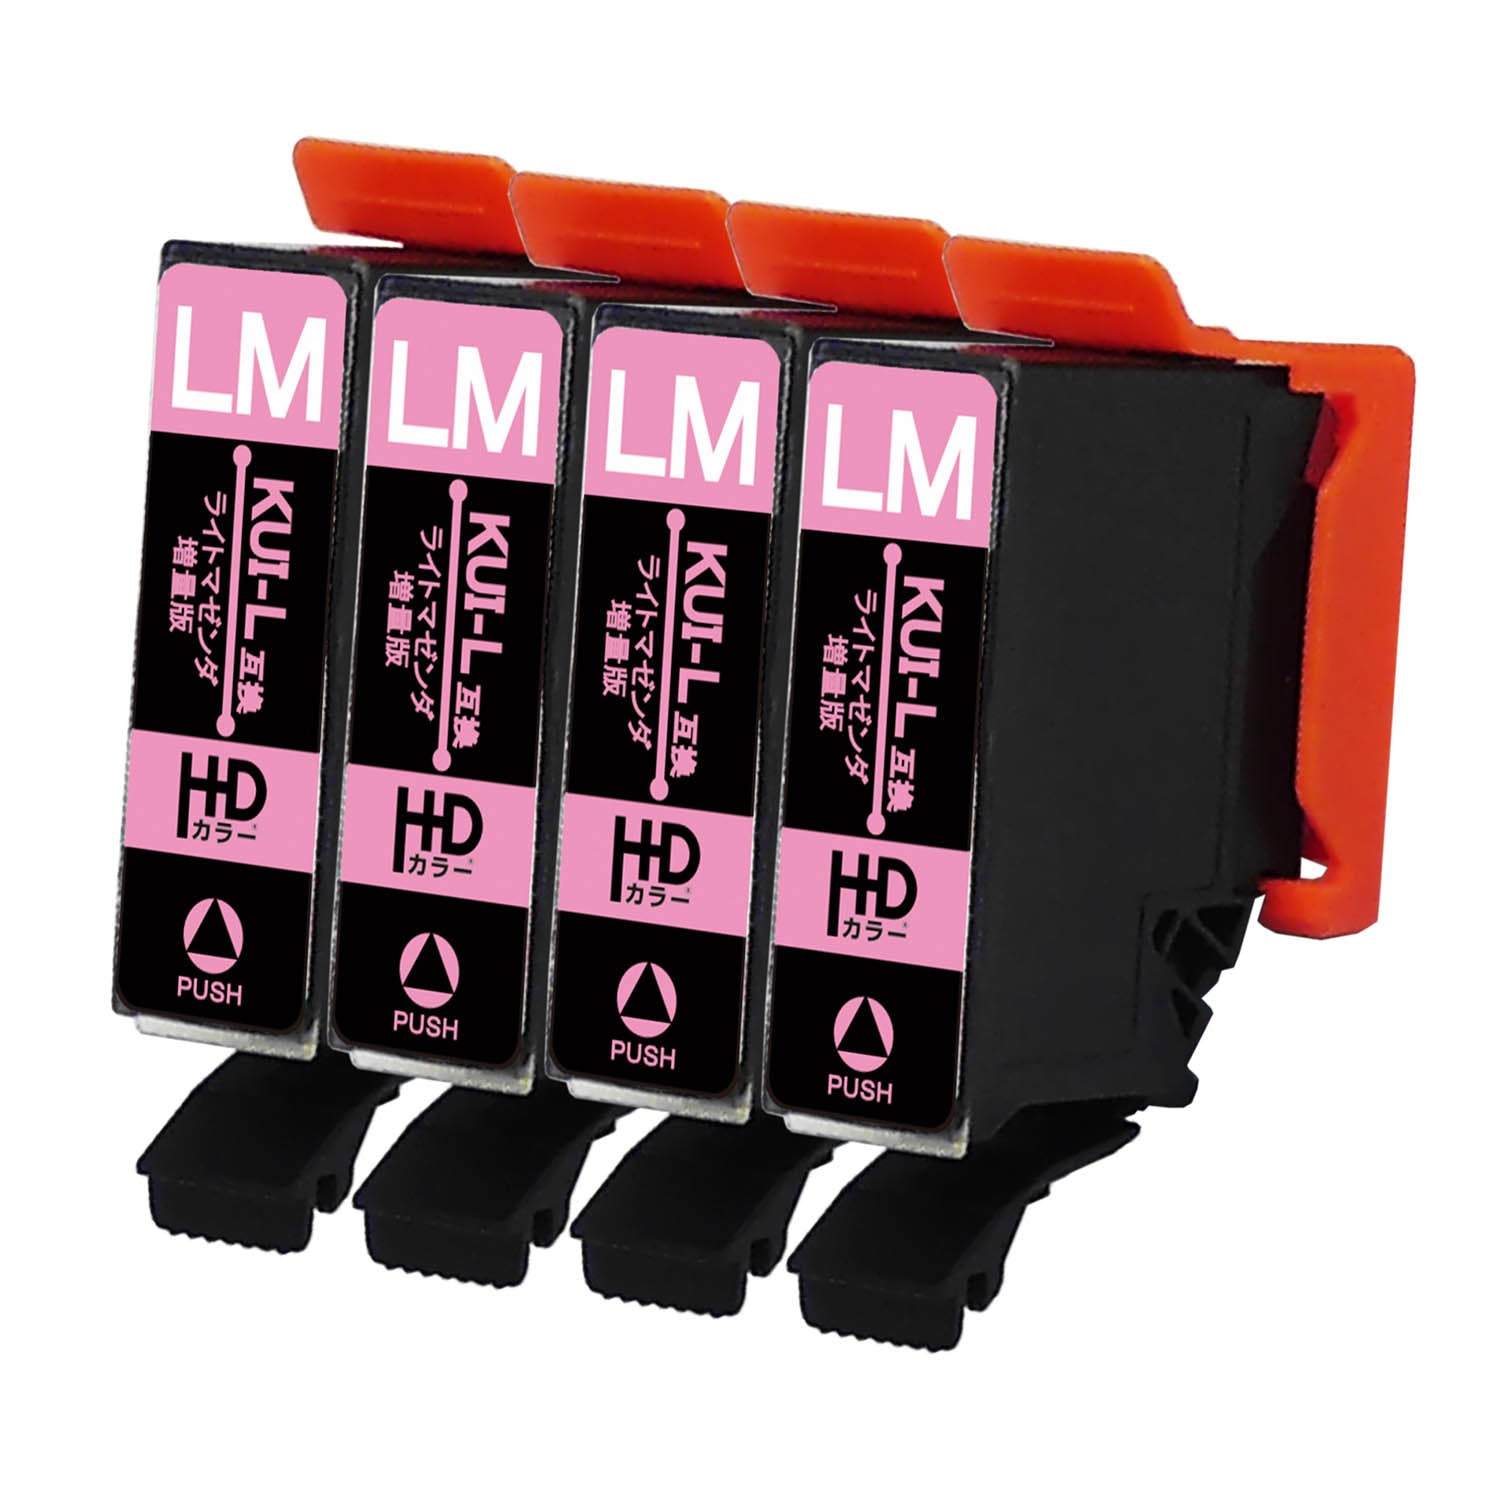 エプソン用 KUI-LM-L (クマノミ)  互換インク  増量版 ライトマゼンタ×4